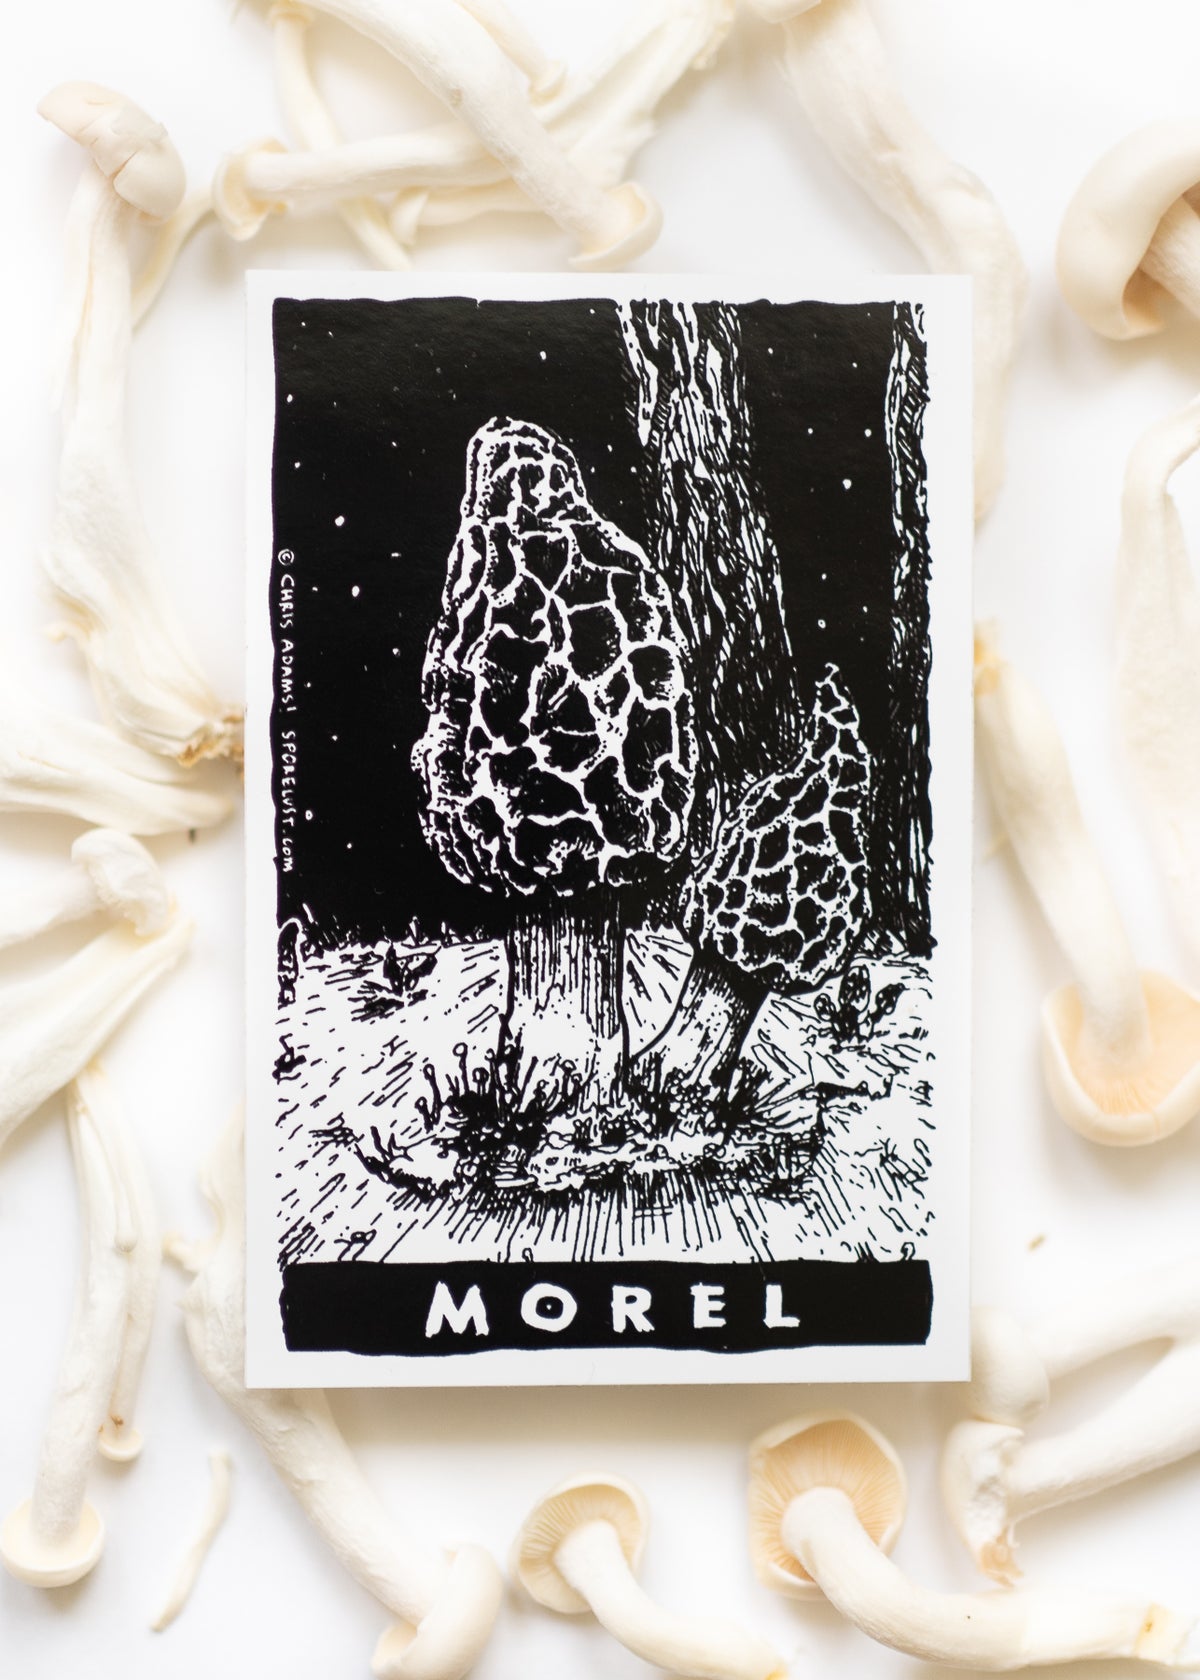 Sporelust! Morel Mushroom Sticker